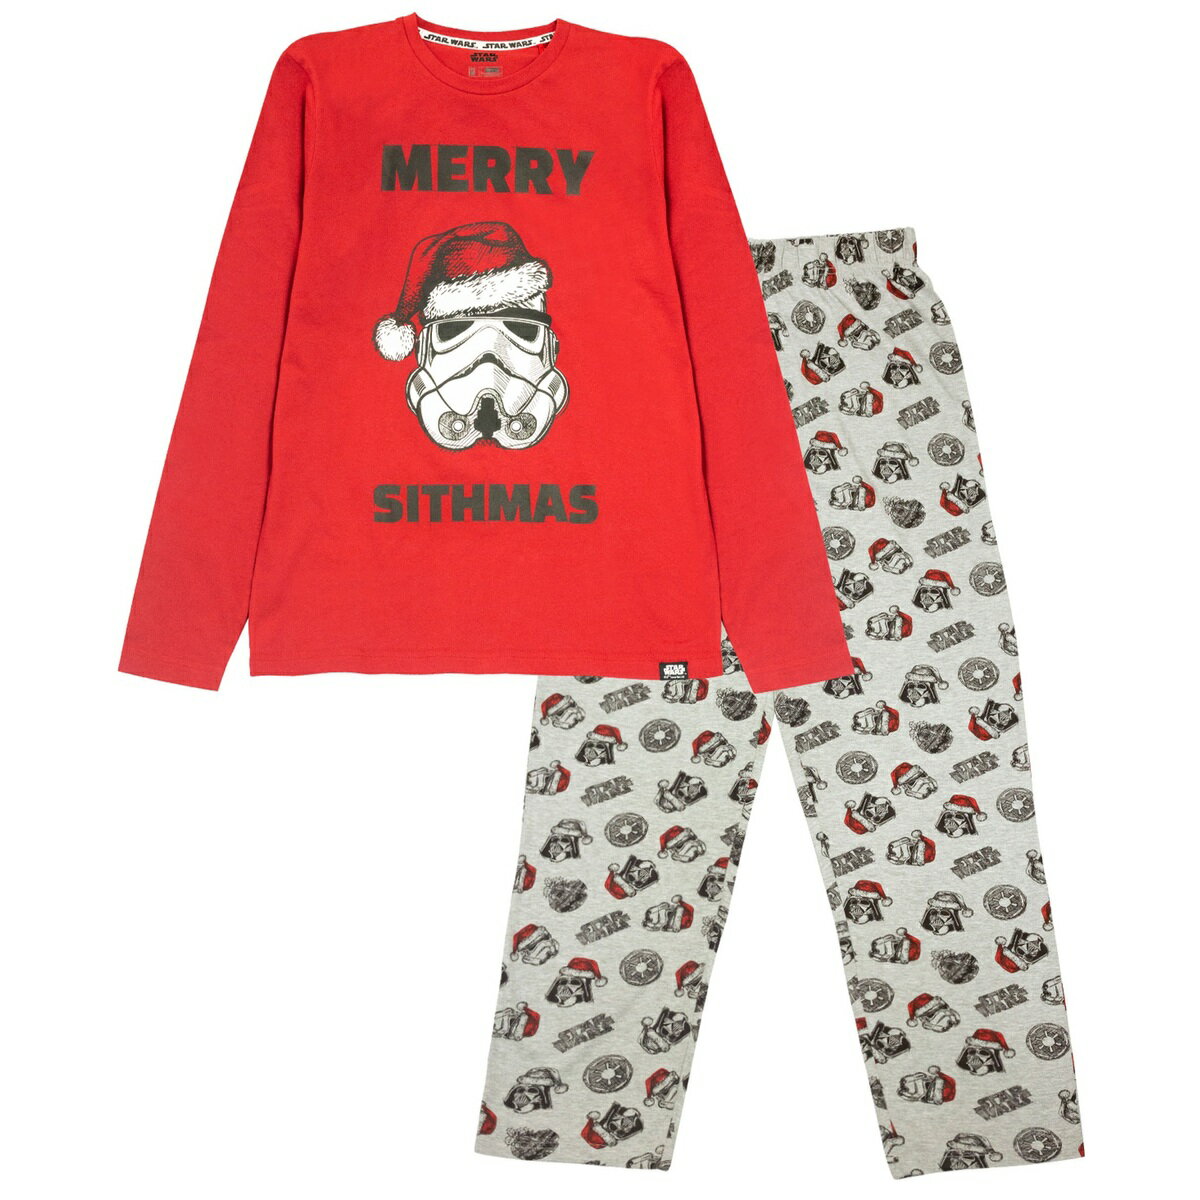 (スター・ウォーズ) Star Wars オフィシャル商品 メンズ Merry Sithmas クリスマス パジャマ 長袖 上下セット 【海外通販】